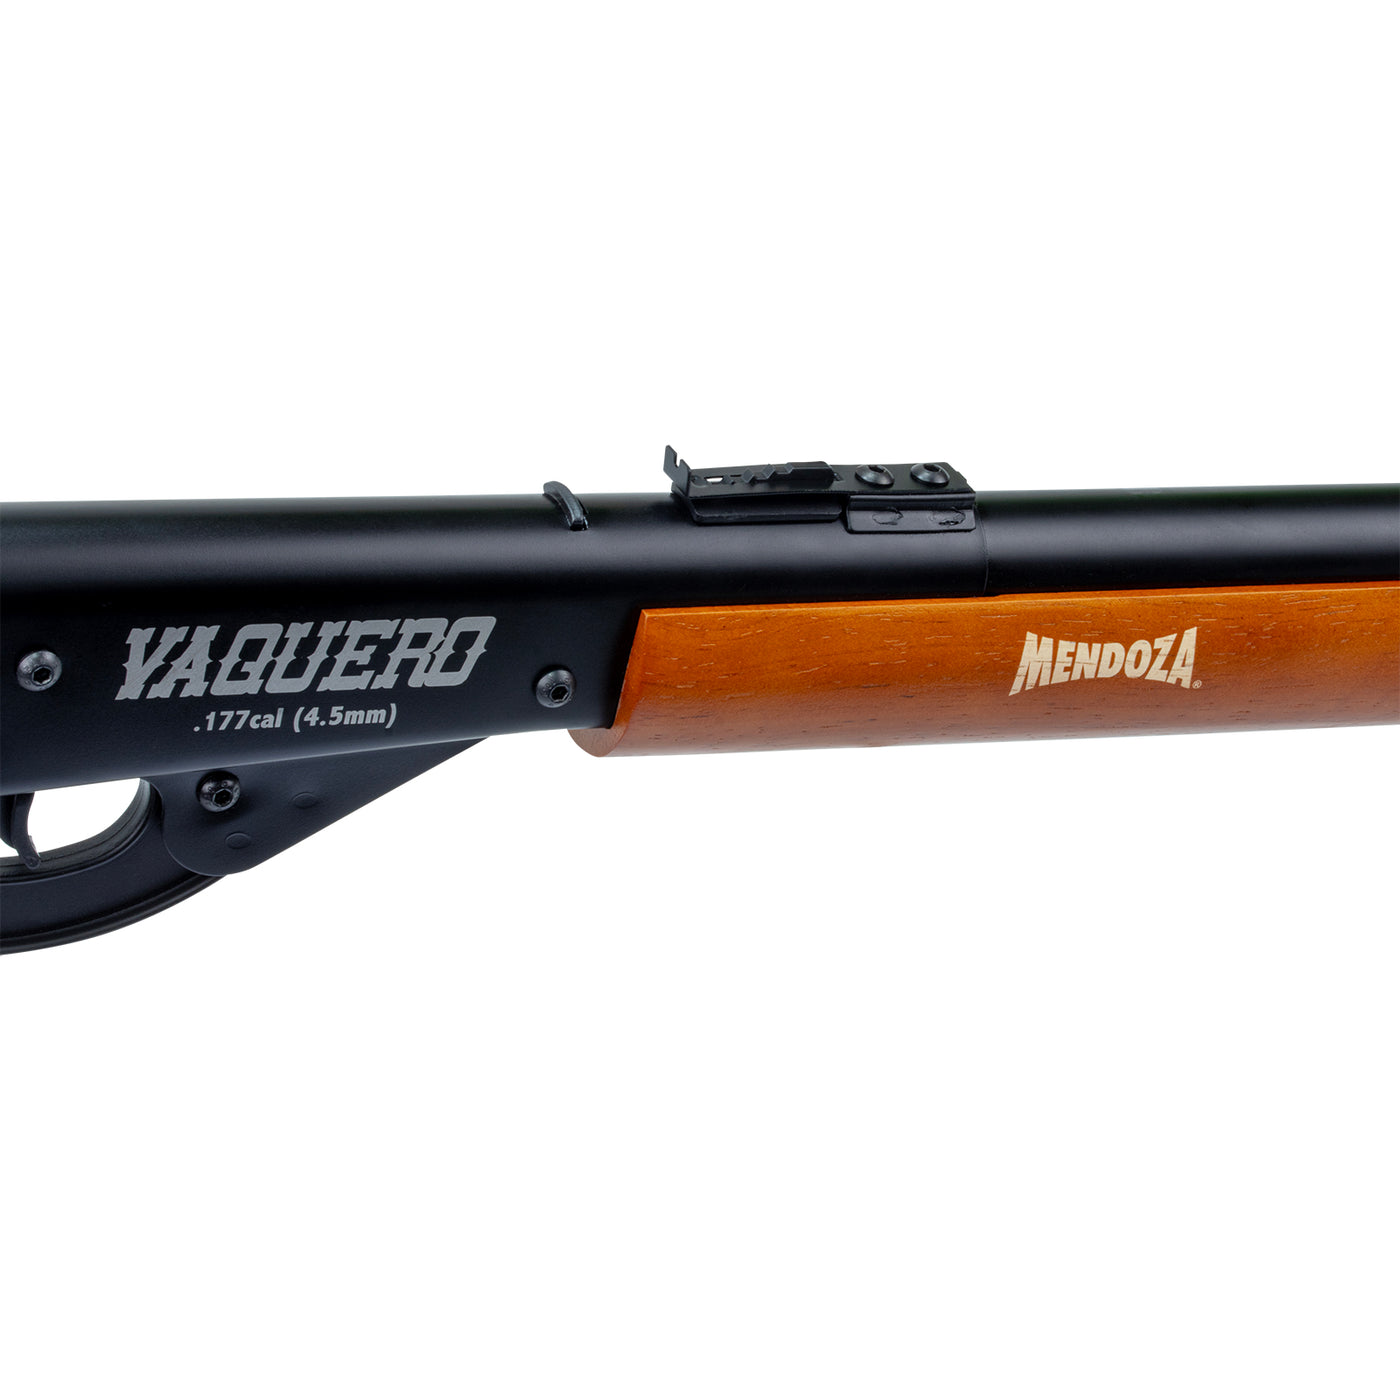 Rifle de municiones Vaquero Madera Cal. 4.5mm